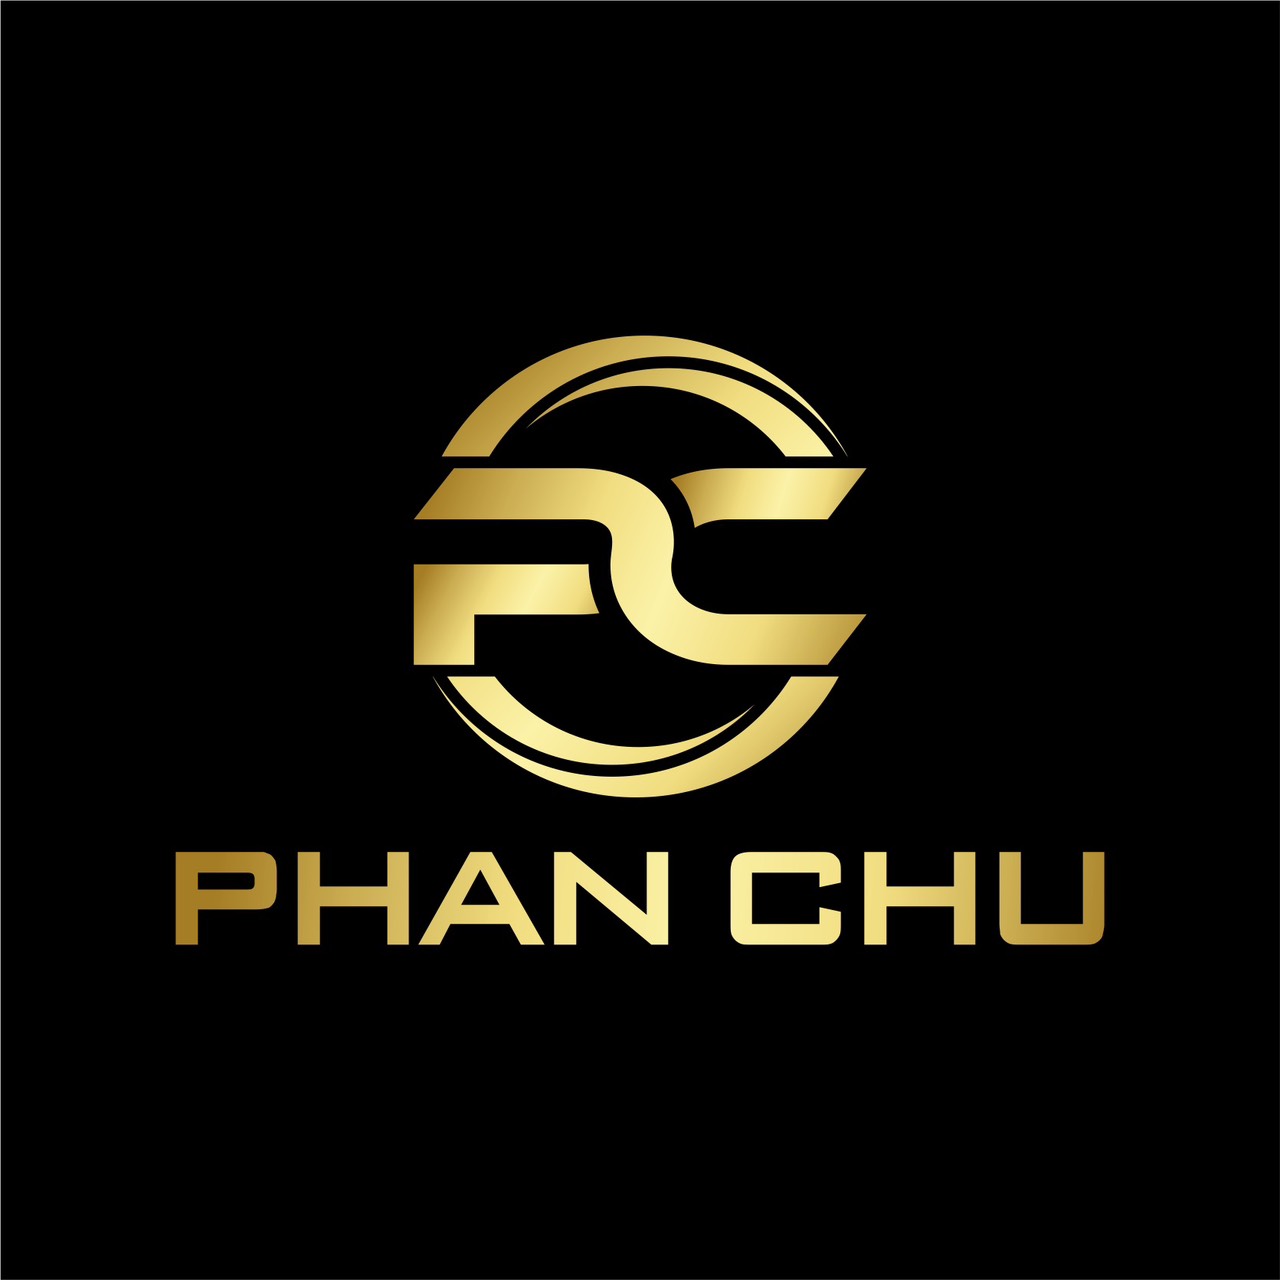 “Nguyễn Phan Hoài Hưng và Phan Chu Co.Ltd: Sứ Mệnh Doanh Nghiệp Vì Sự Phát Triển Cộng Đồng và Trách Nhiệm Xã Hội”